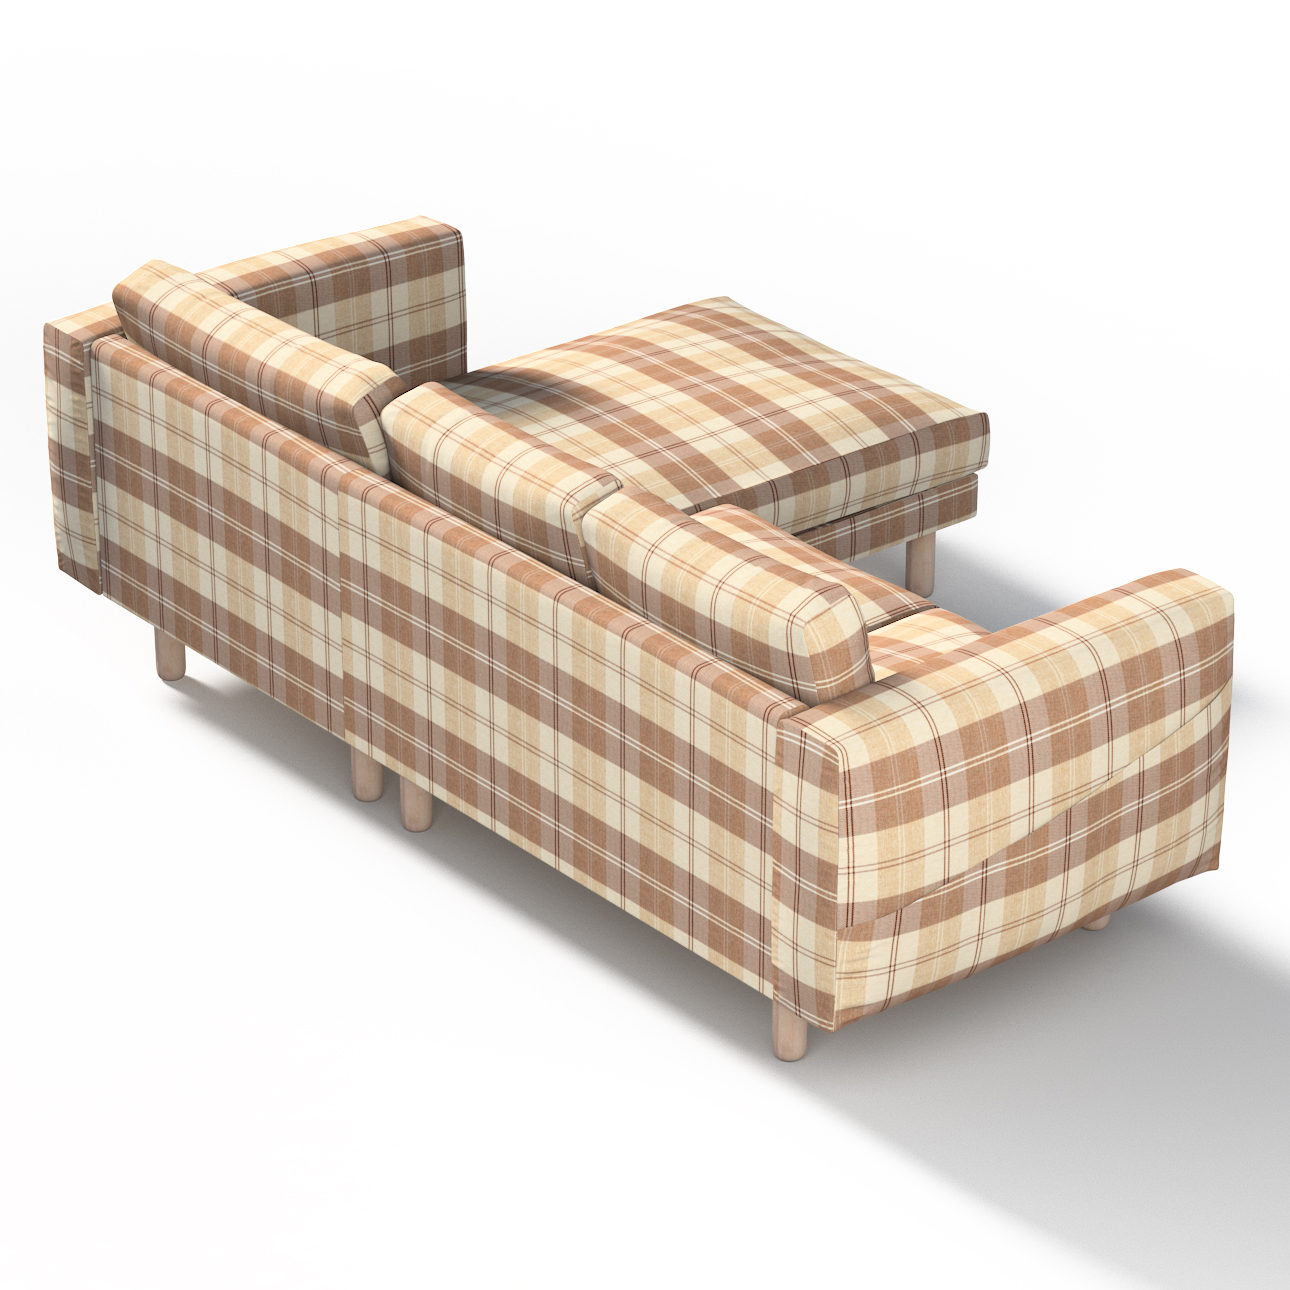 Bezug für Norsborg 3-Sitzer Sofa mit Recamiere, braun-beige, Norsborg Bezug günstig online kaufen